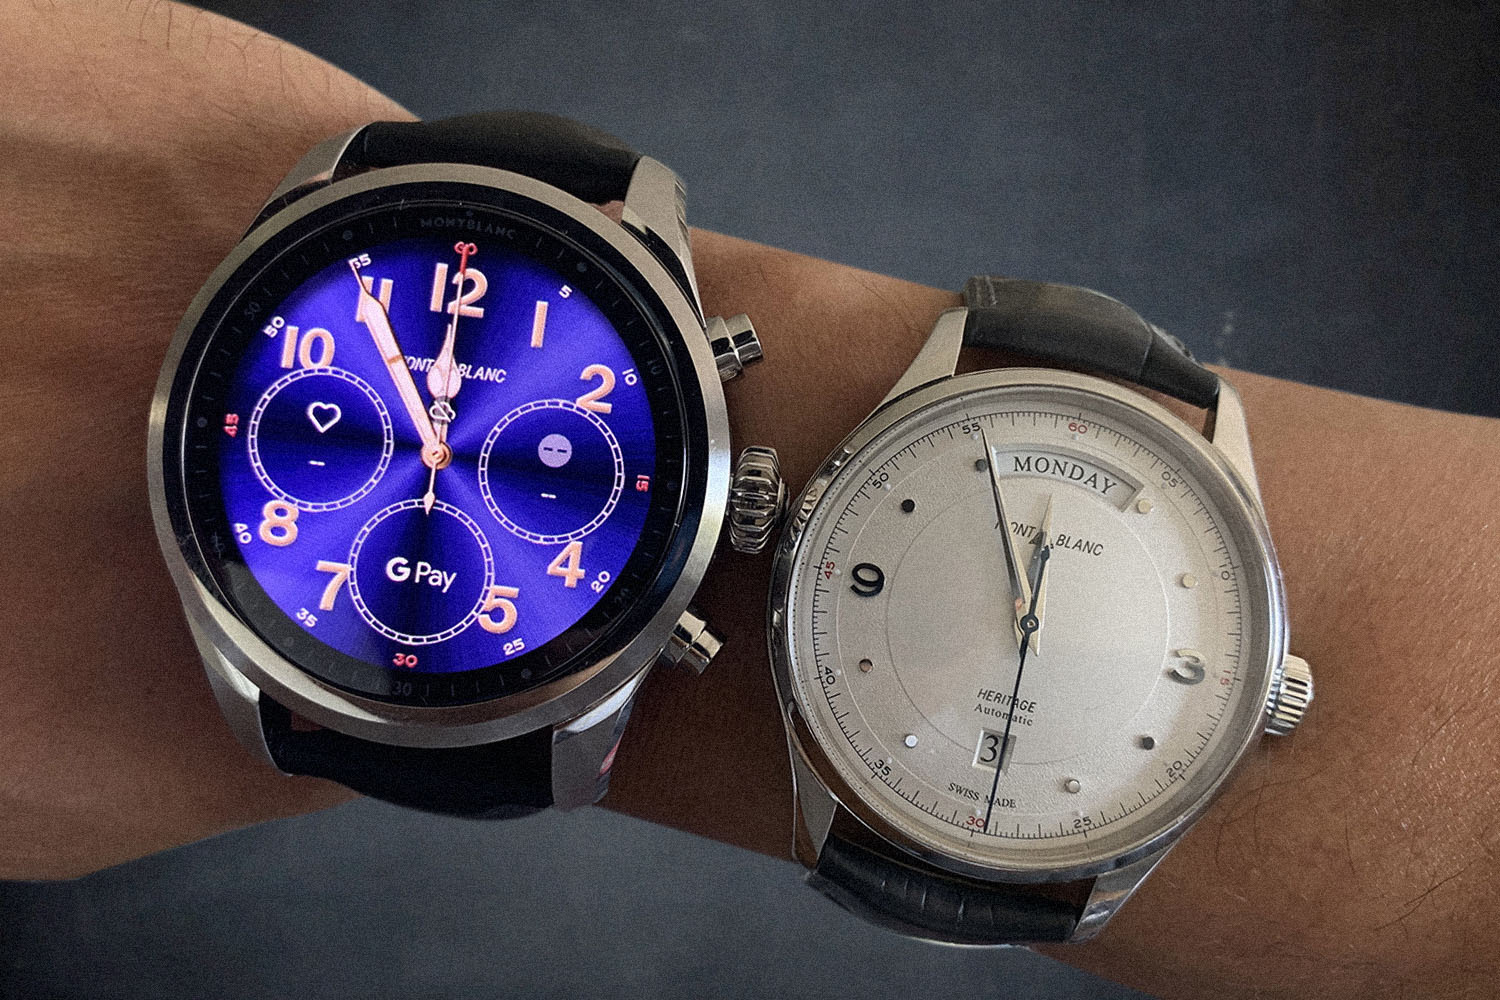 Montblanc smart watch